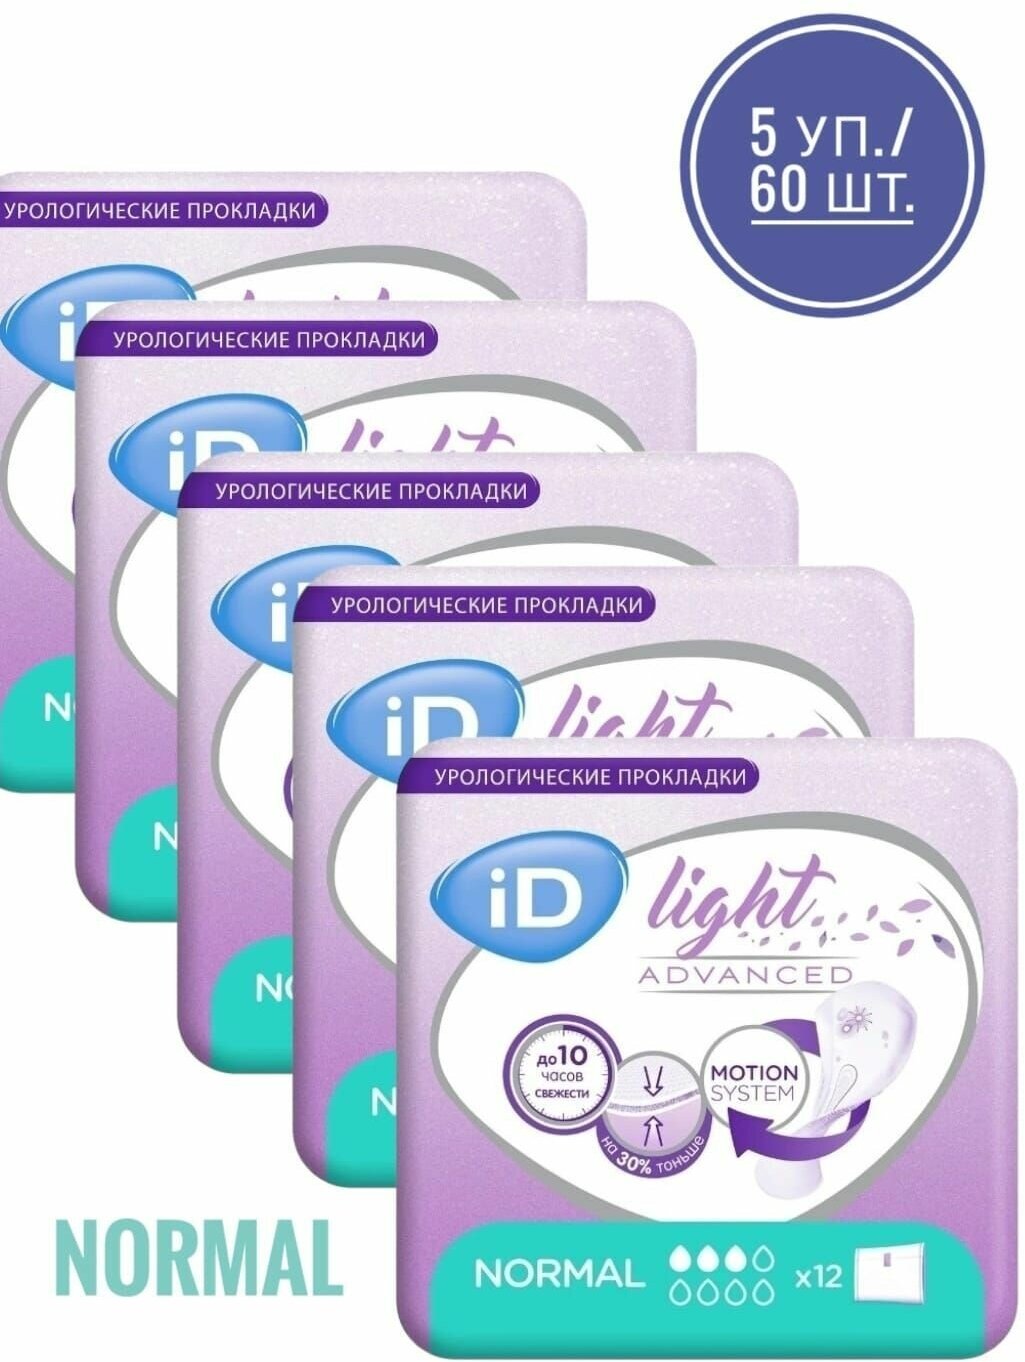 Урологические прокладки ID Light Advanced Normal 12 шт.*5 упаковок